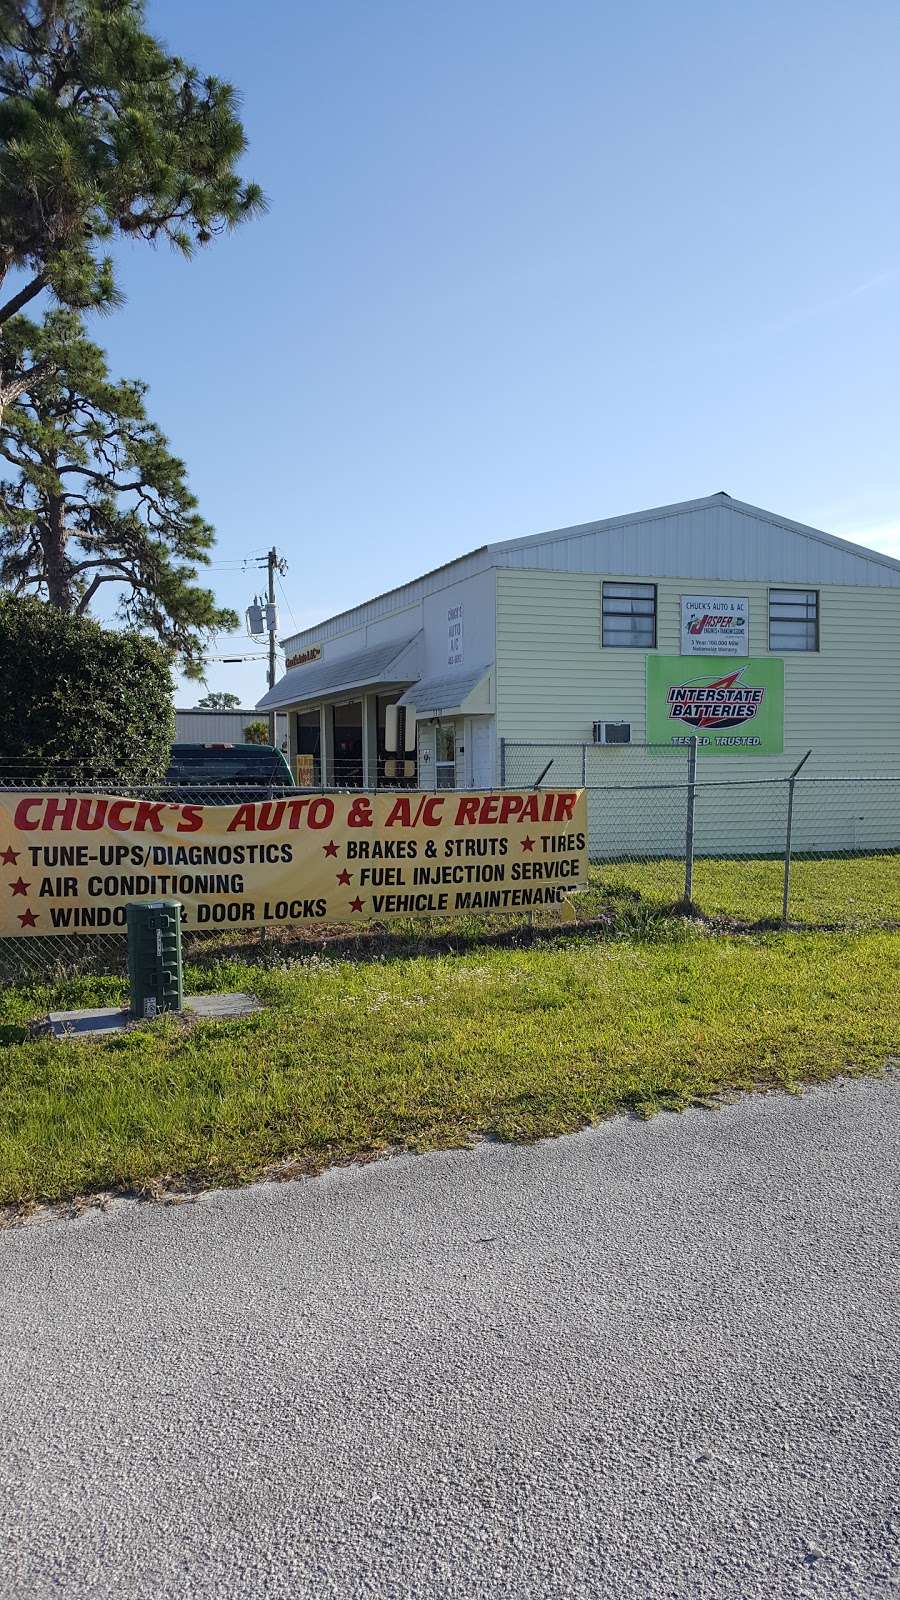 Chucks Auto & AC Repair | 3330 N Courtenay Pkwy, Merritt Island, FL 32953, USA | Phone: (321) 453-9692